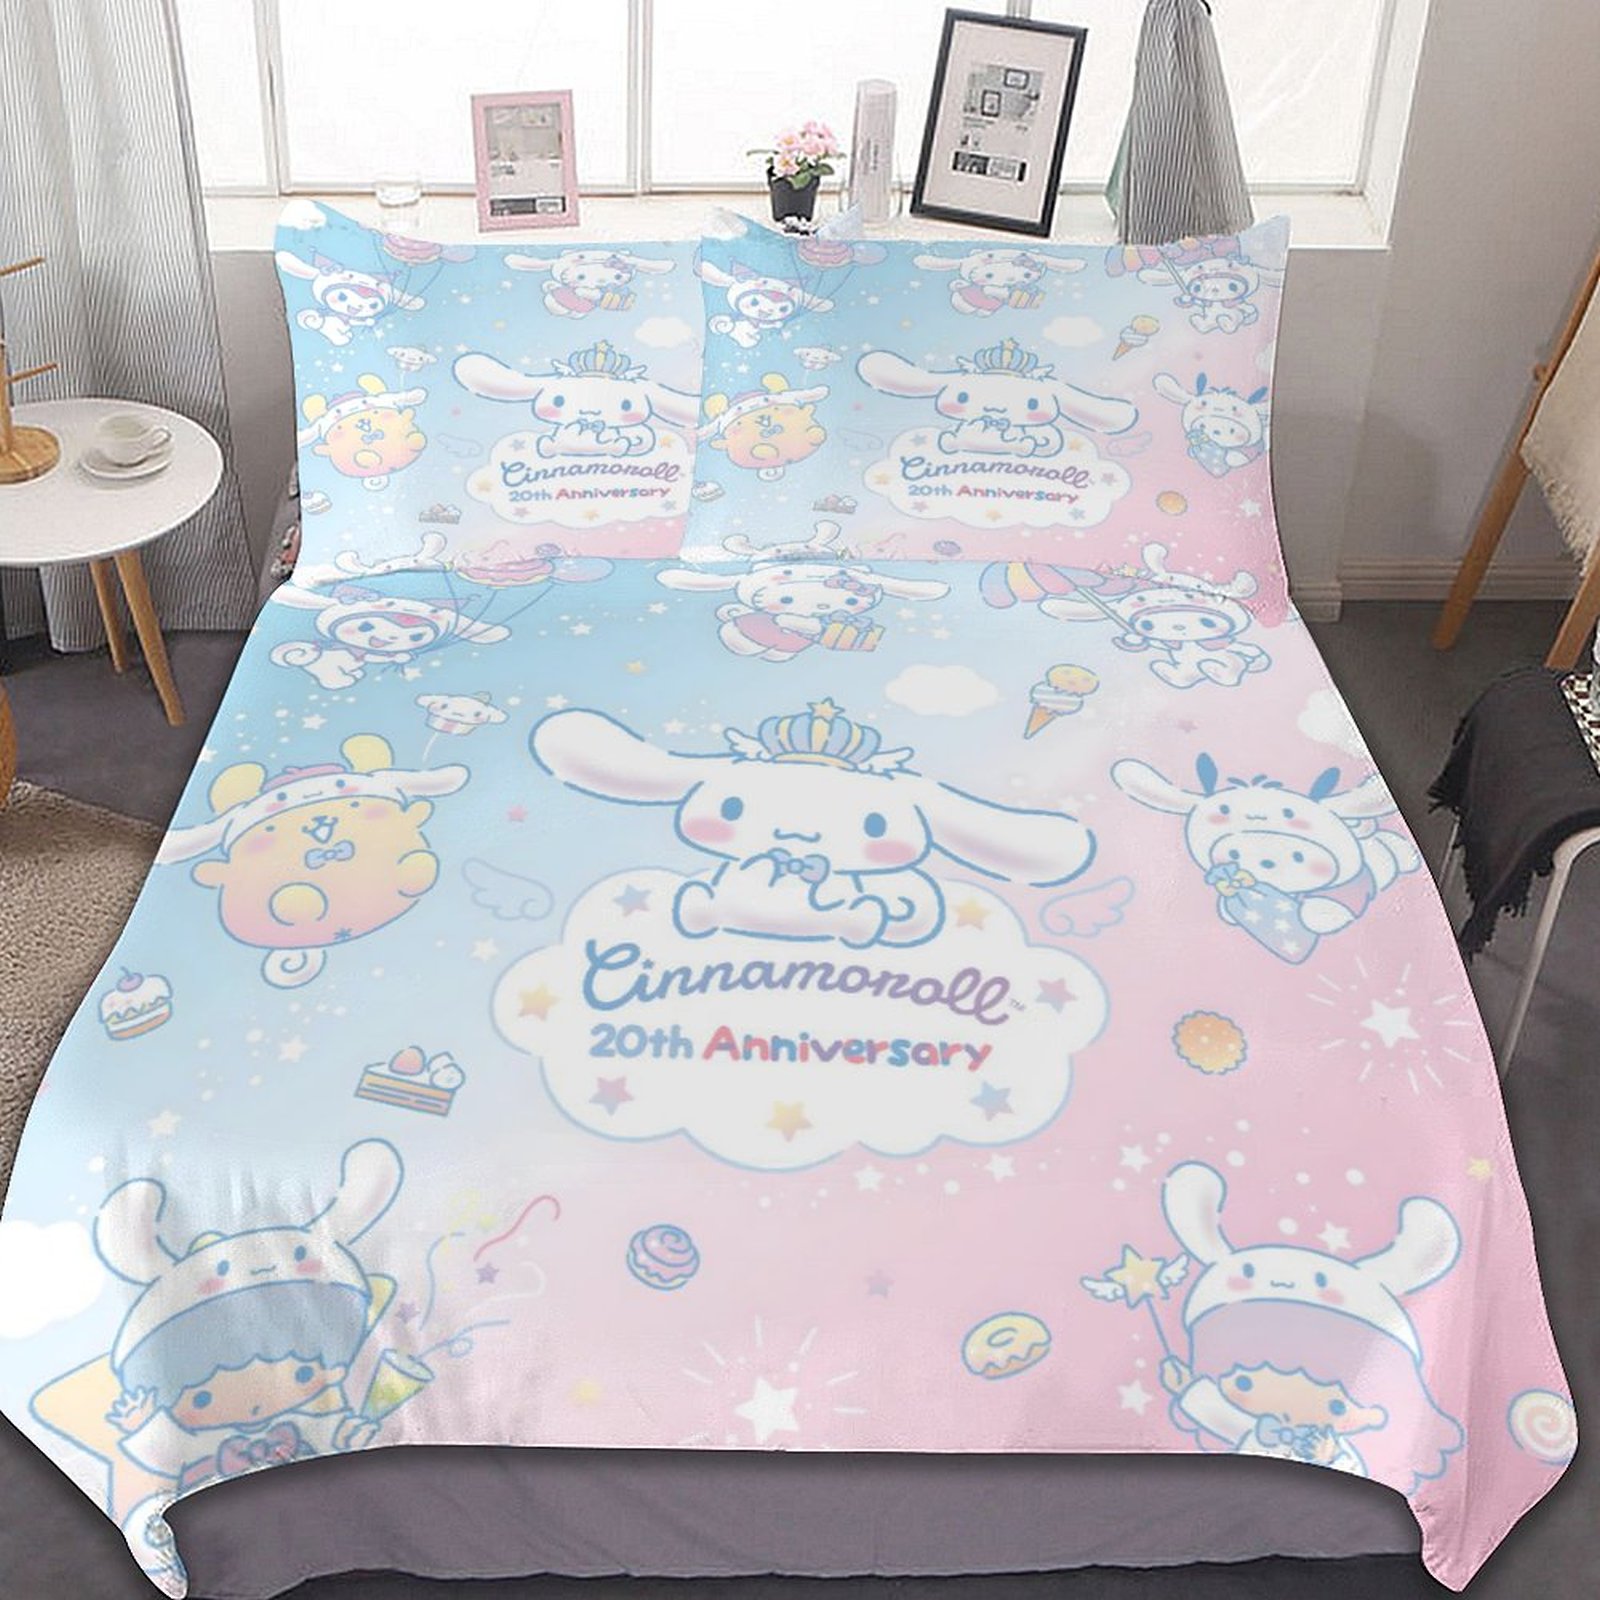 1 phim hoạt hình hoạt hình Sanrio Kawaii cinnamoroll bộ đồ giường ngủ Quilt Duvet cover Comforter Vỏ Gối Chăn Mền trẻ em bé trai giường